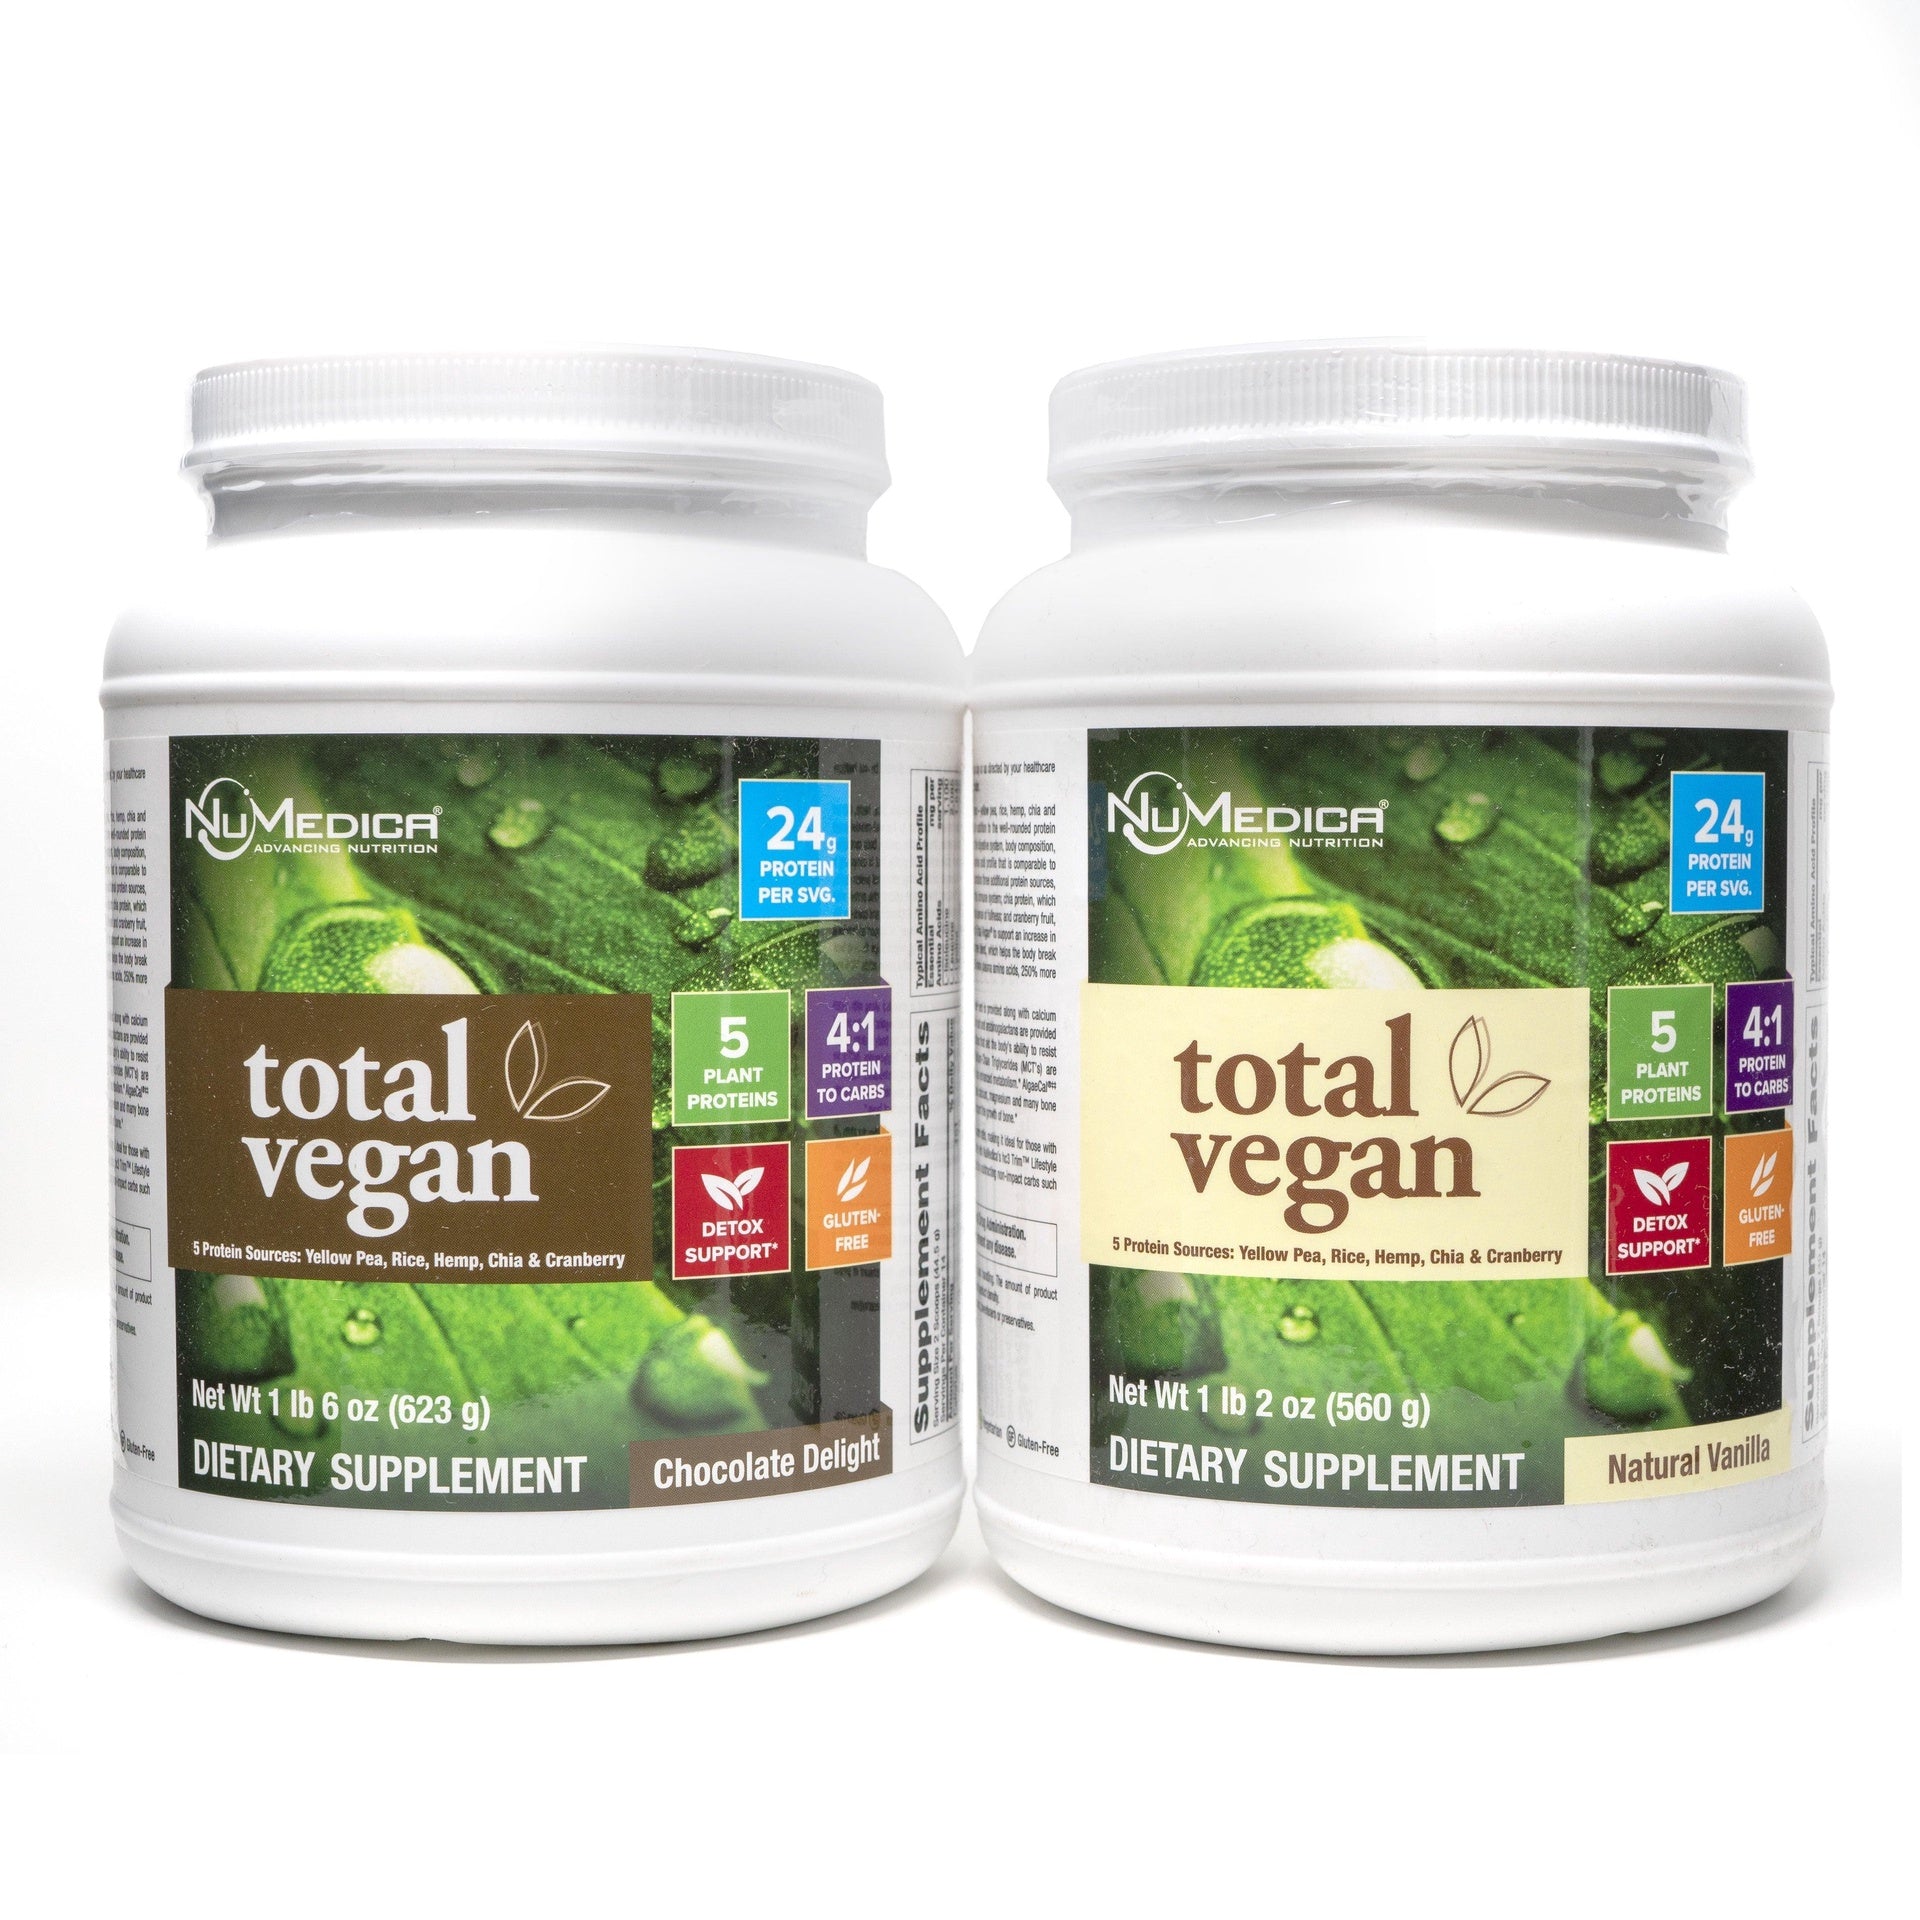 Total Vegan 14 Servings.